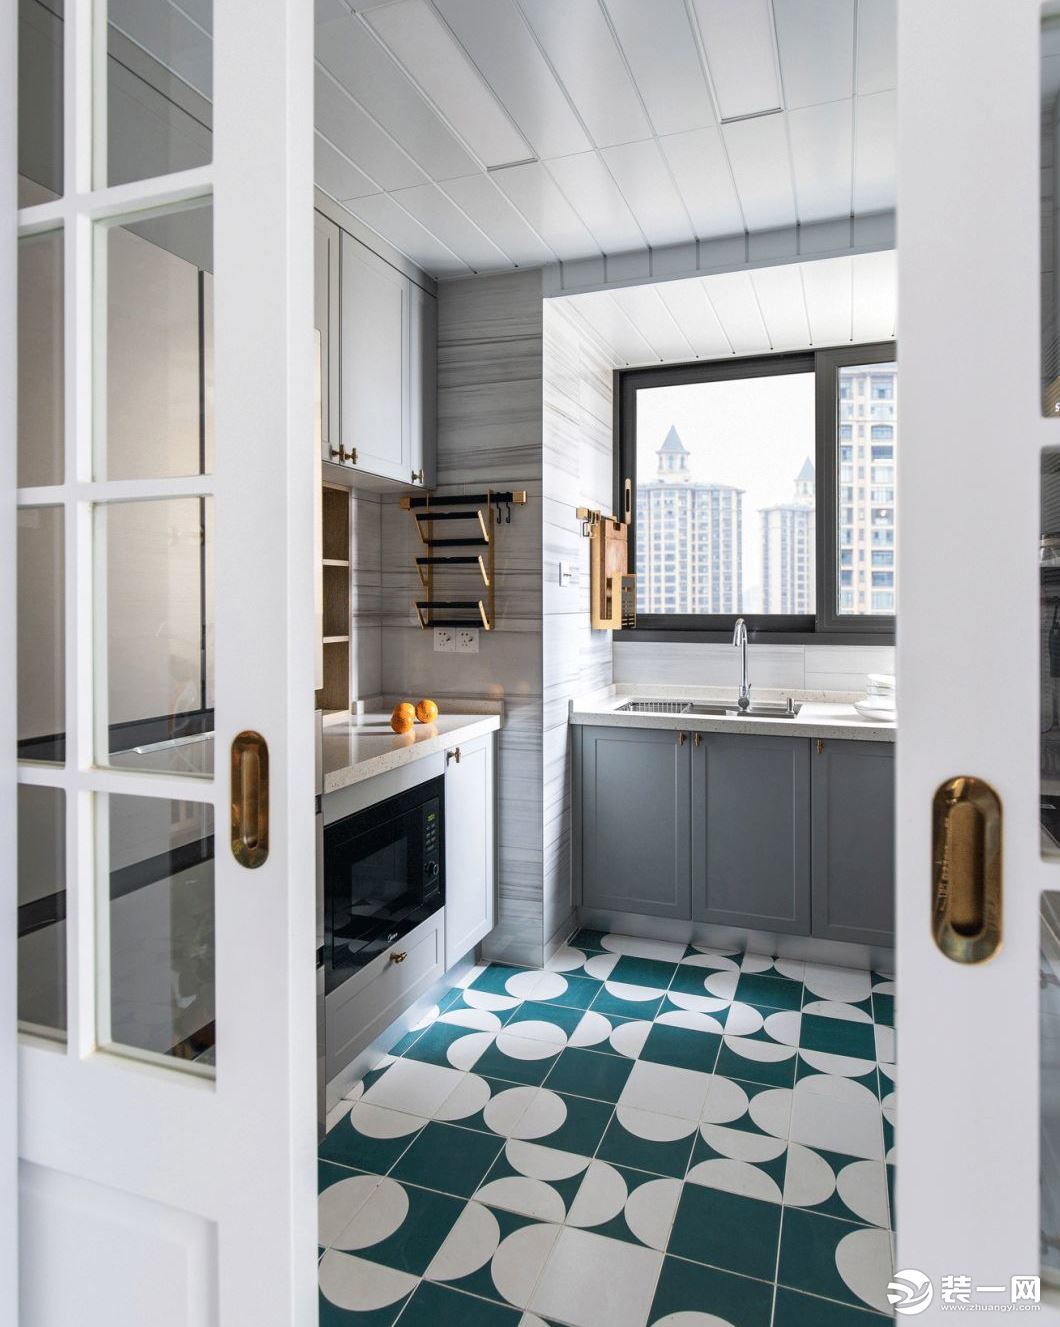 厨房地砖，选用了白色与绿色系列花砖混搭，看似不规律的搭配，实则来自设计师精心设计。